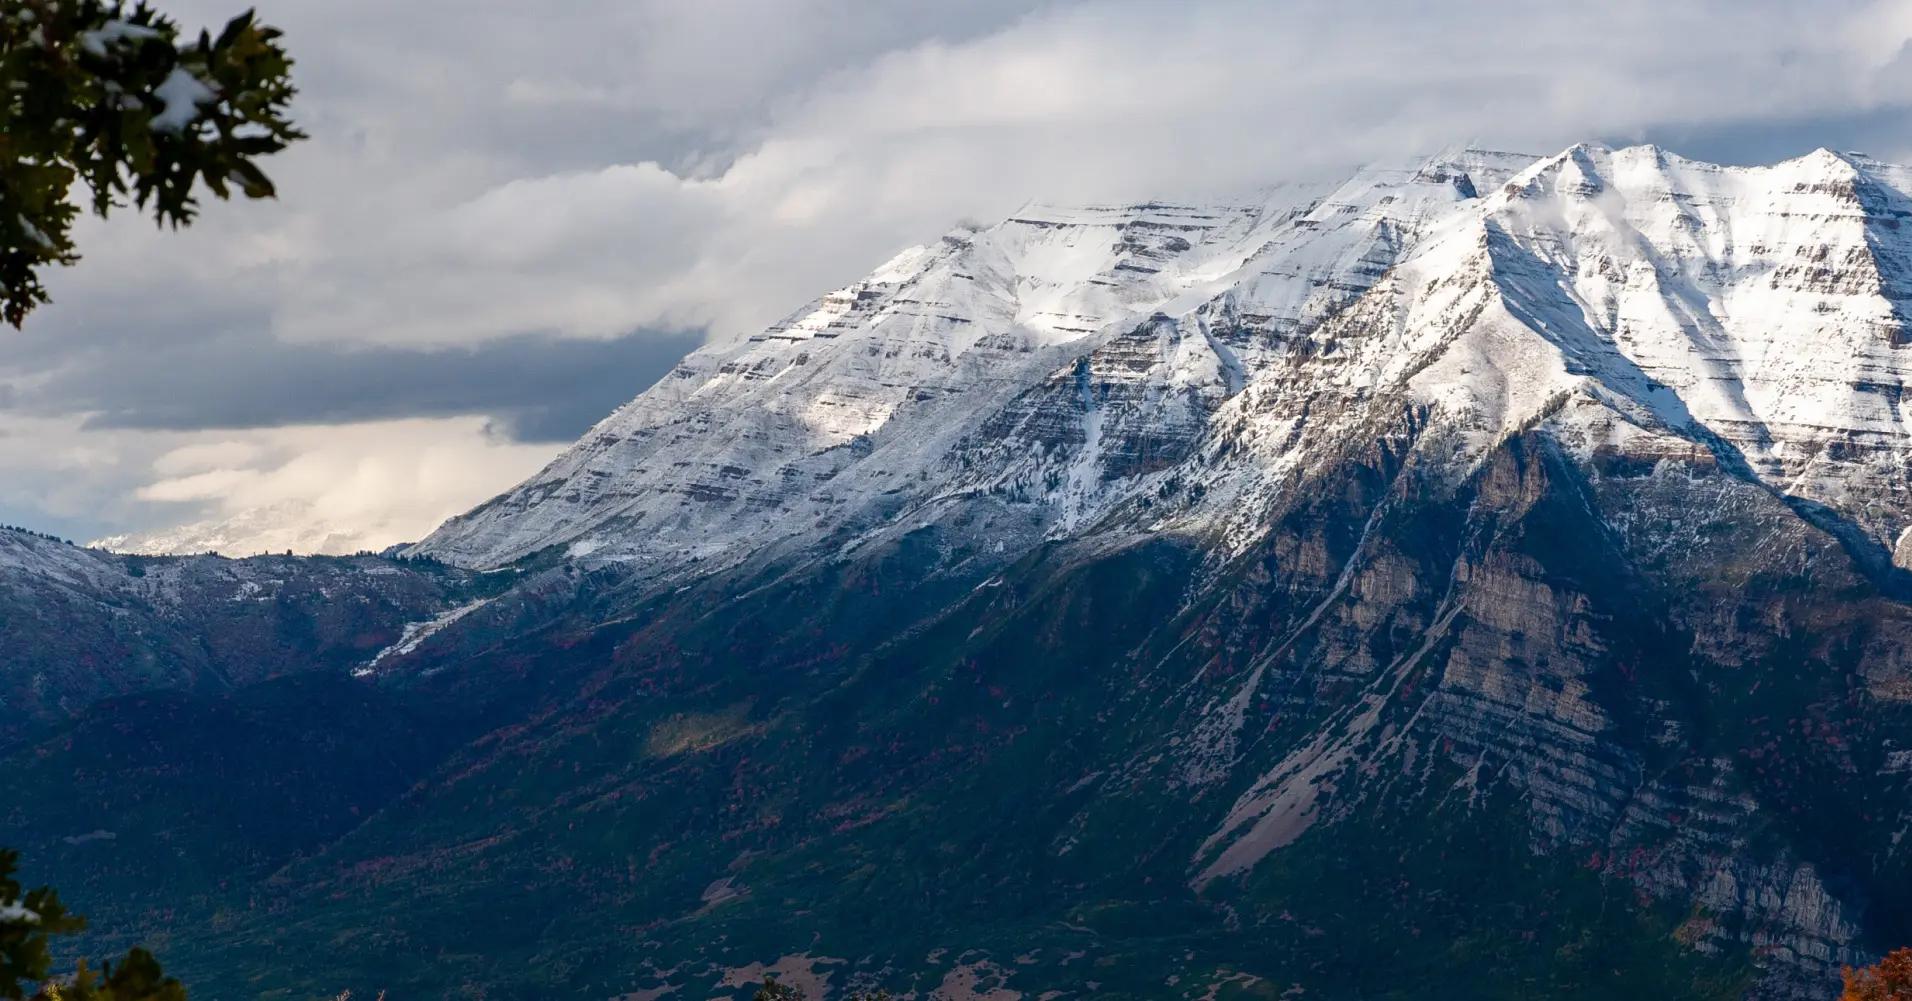 Mount Timpanogos with snowcap